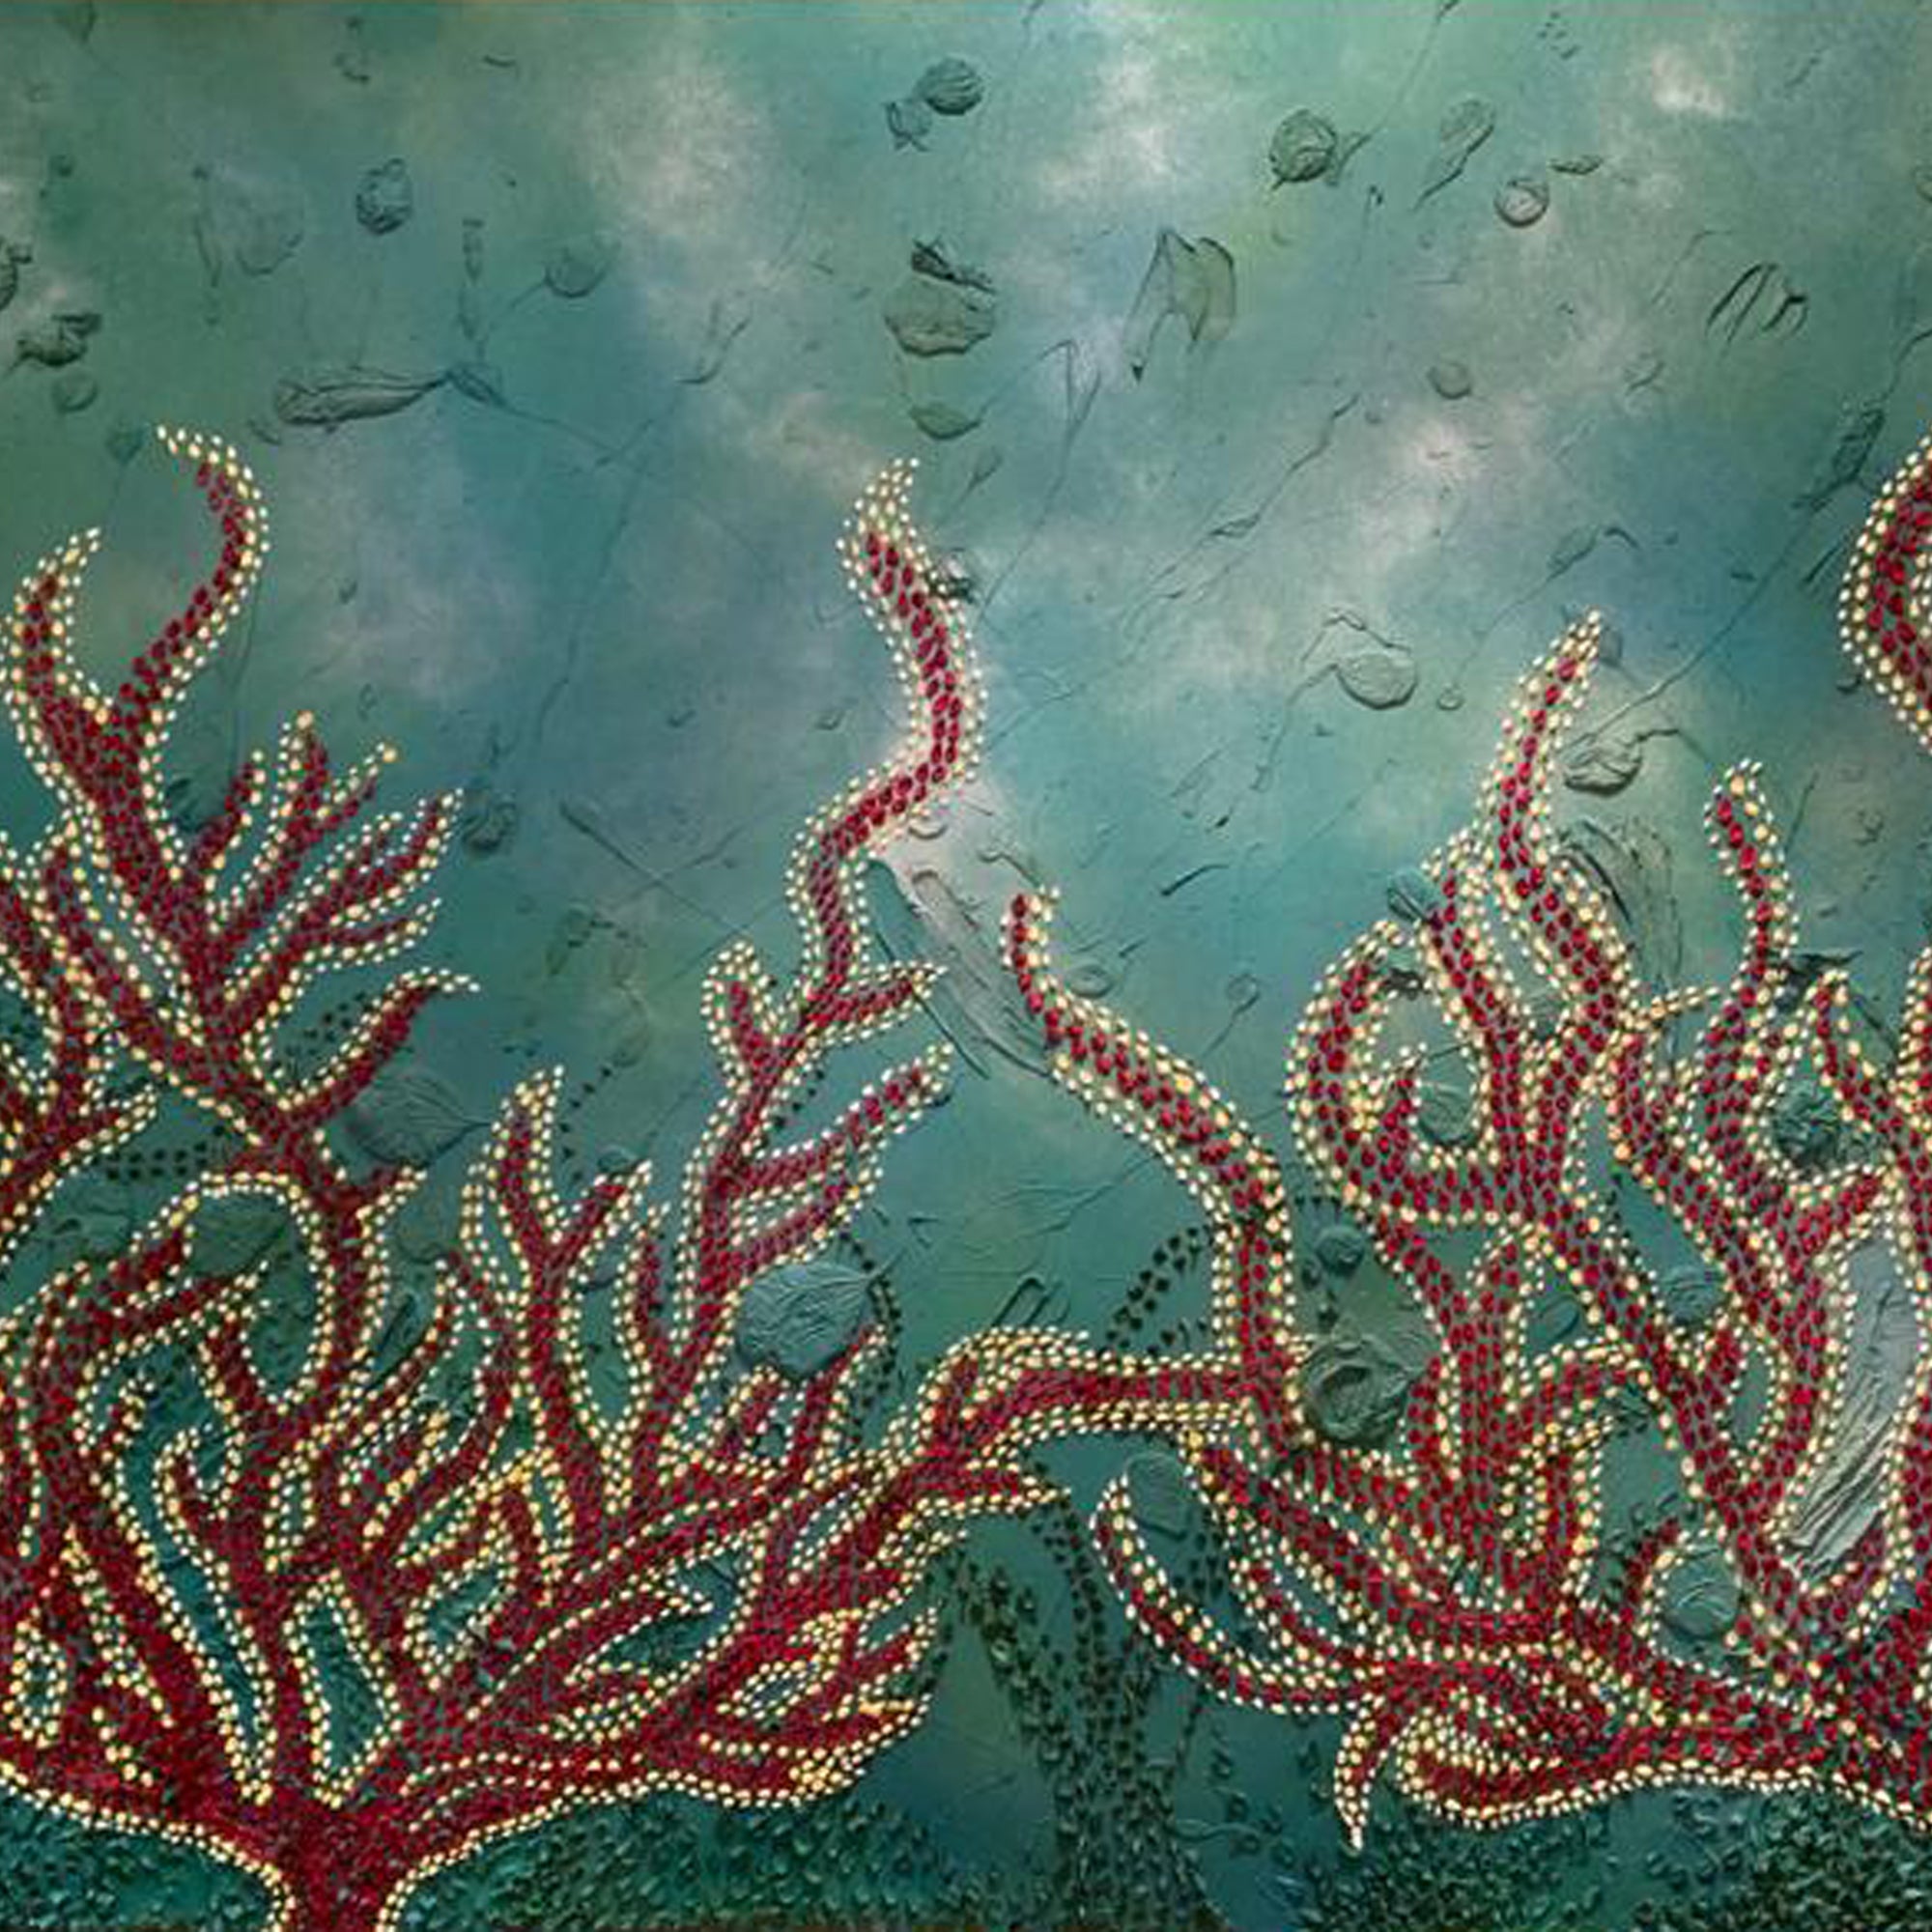 underwater coral art